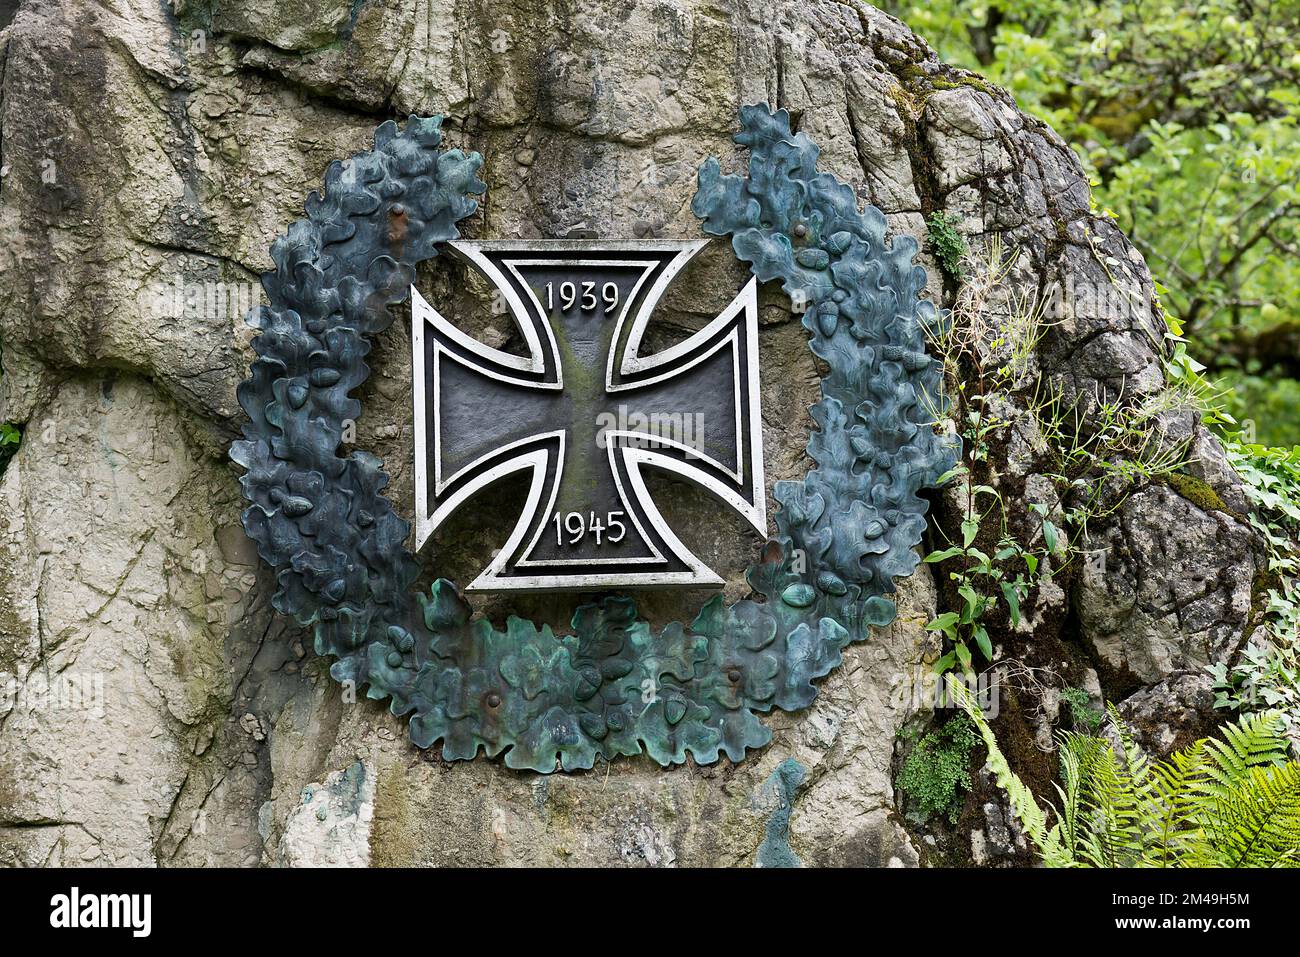 La Cruz de Hierro con corona de laurel en un monumento de guerra de ambas guerras mundiales, Bad Hindelang, Allgaeu, Baviera, Alemania Foto de stock